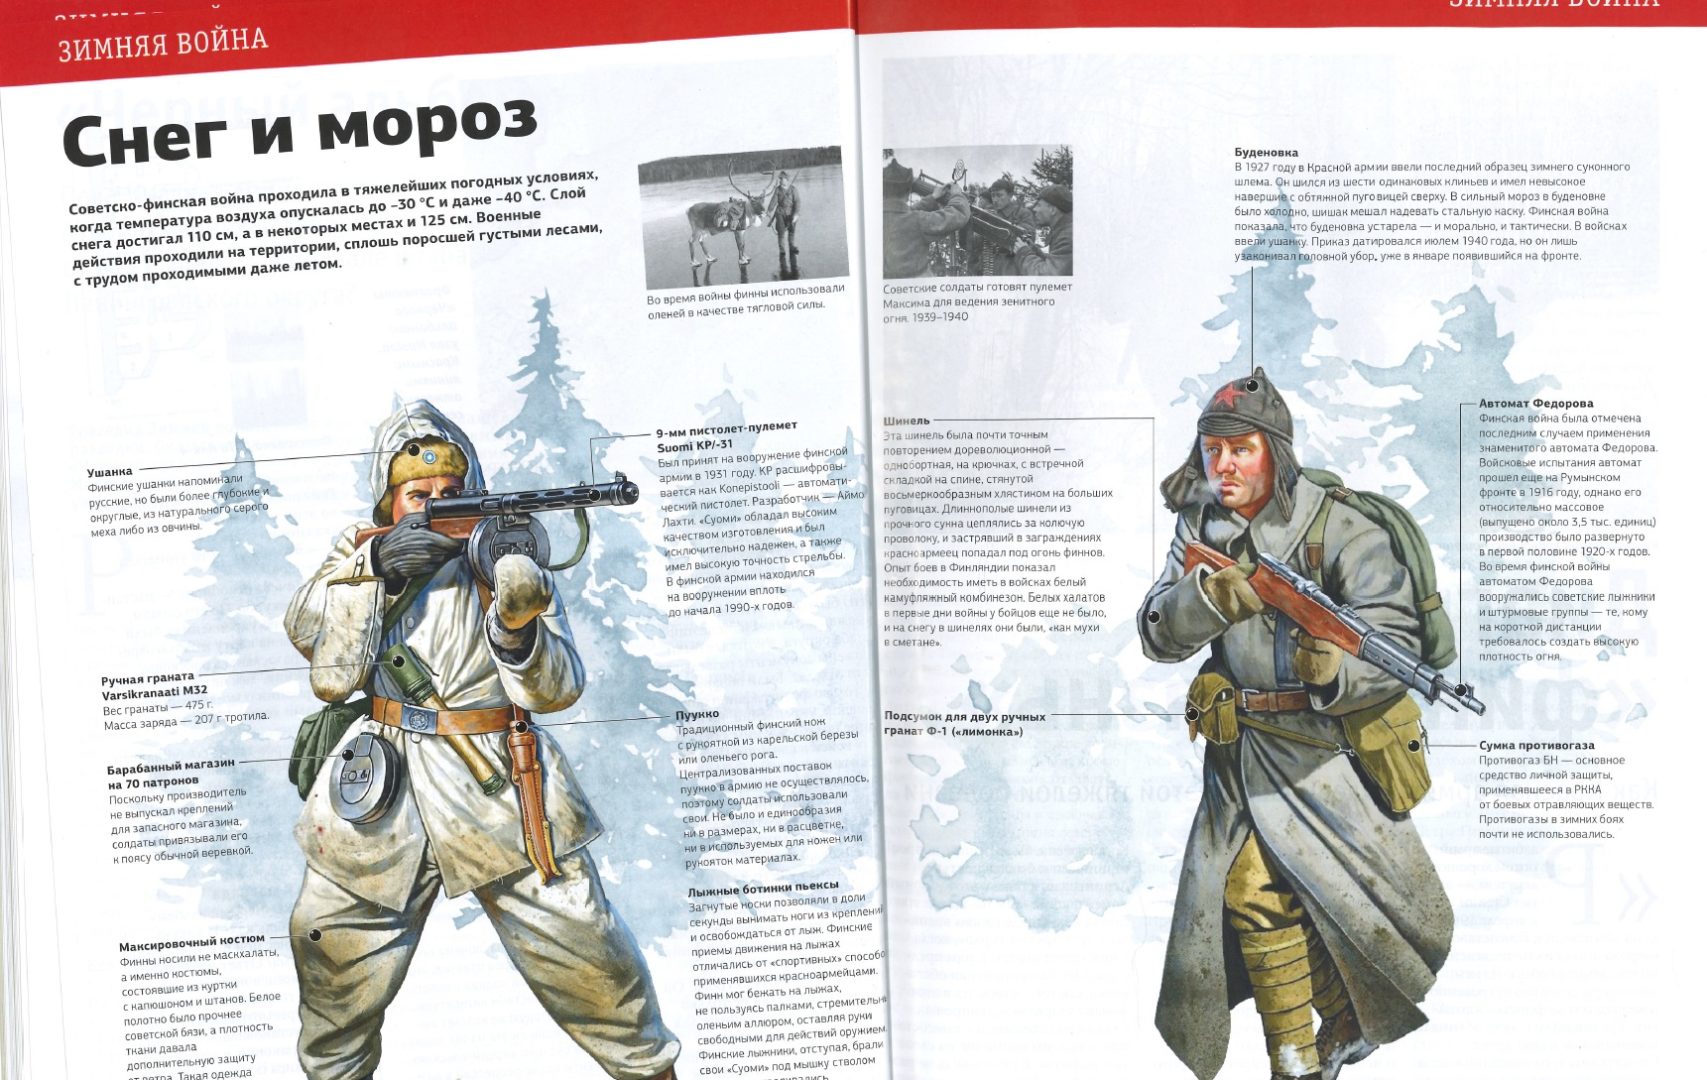 Suomalaisen sotilaan varustusta kehutaan venäläistä tarkoituksenmukaisemmaksi pakkaseen.